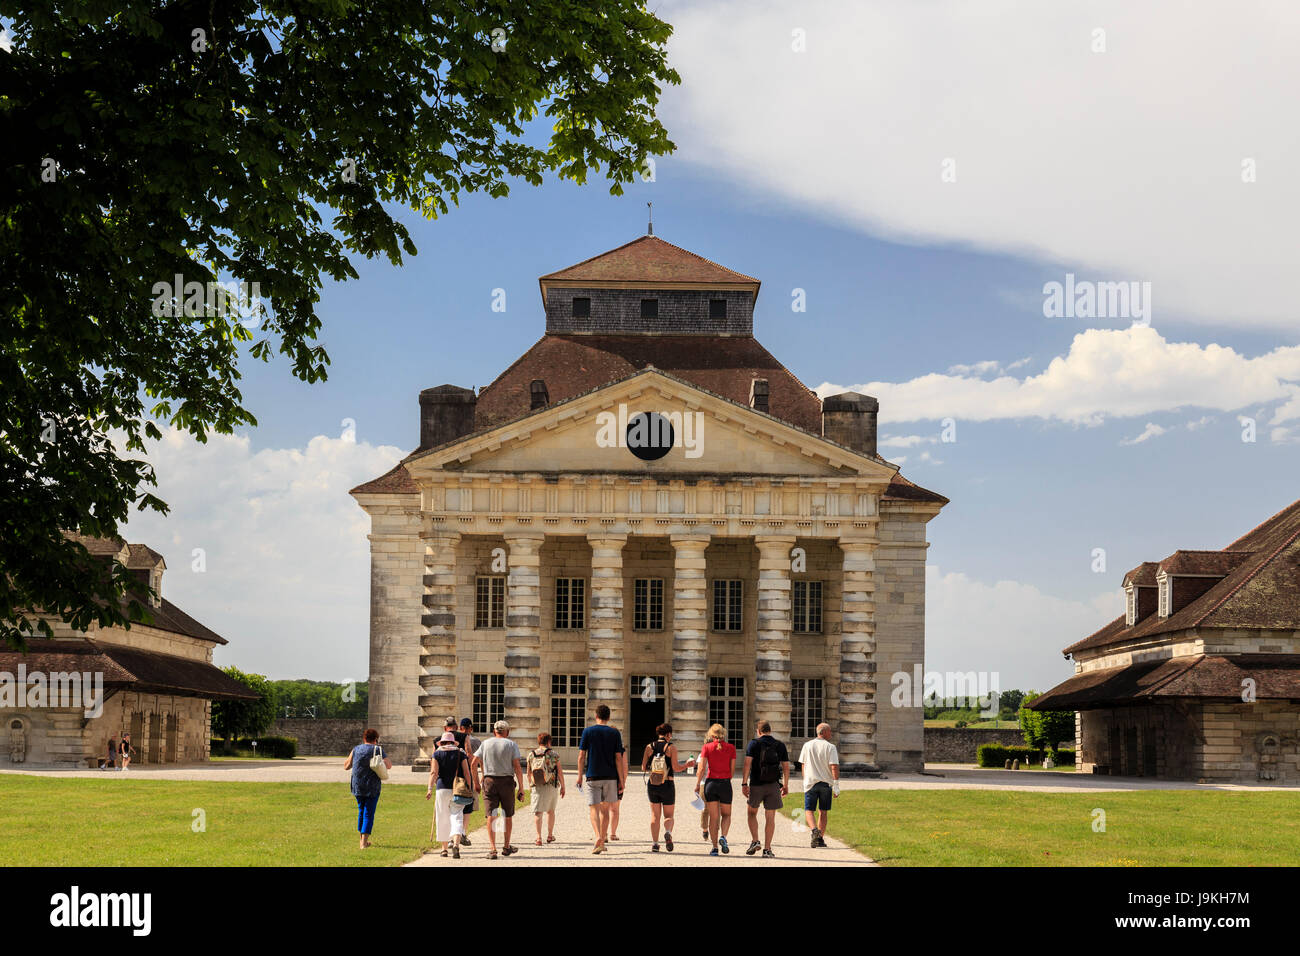 Francia, Doubs, Arc et Senans, Saline Reali di Arc et Senans, classificato come patrimonio mondiale dall'UNESCO, la casa del direttore Foto Stock